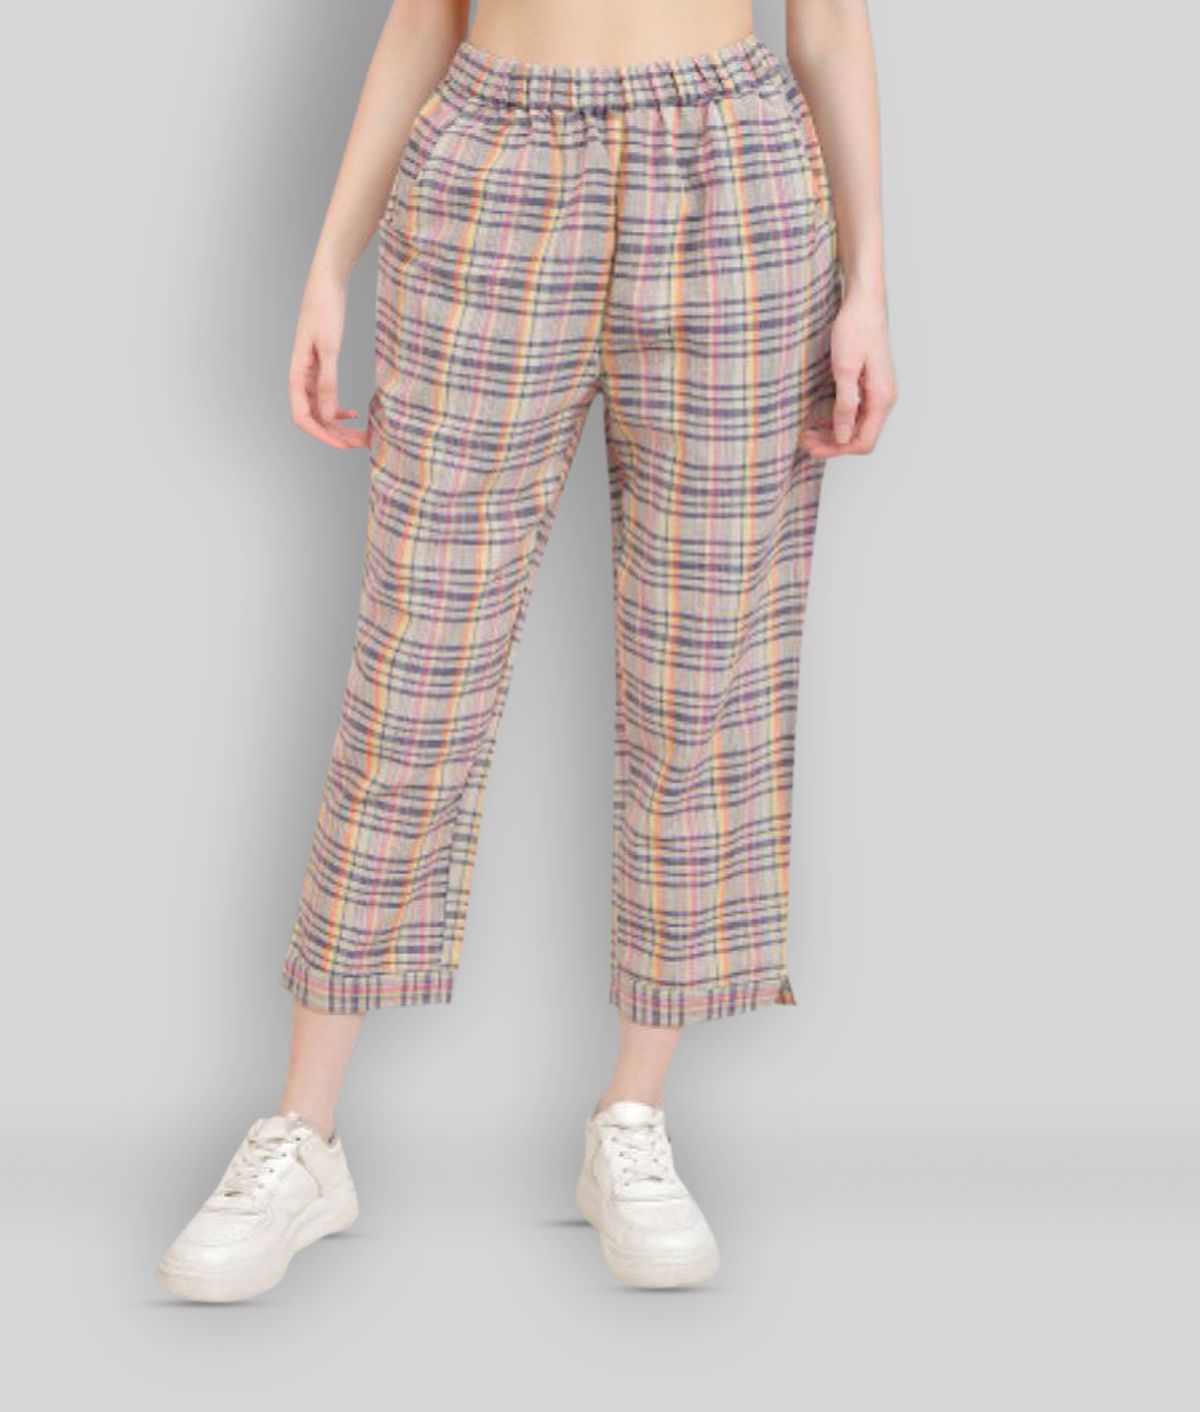 litlu - Multicolor Color Cotton Blend Loose Women's Casual Pants ( Pack of 1 )